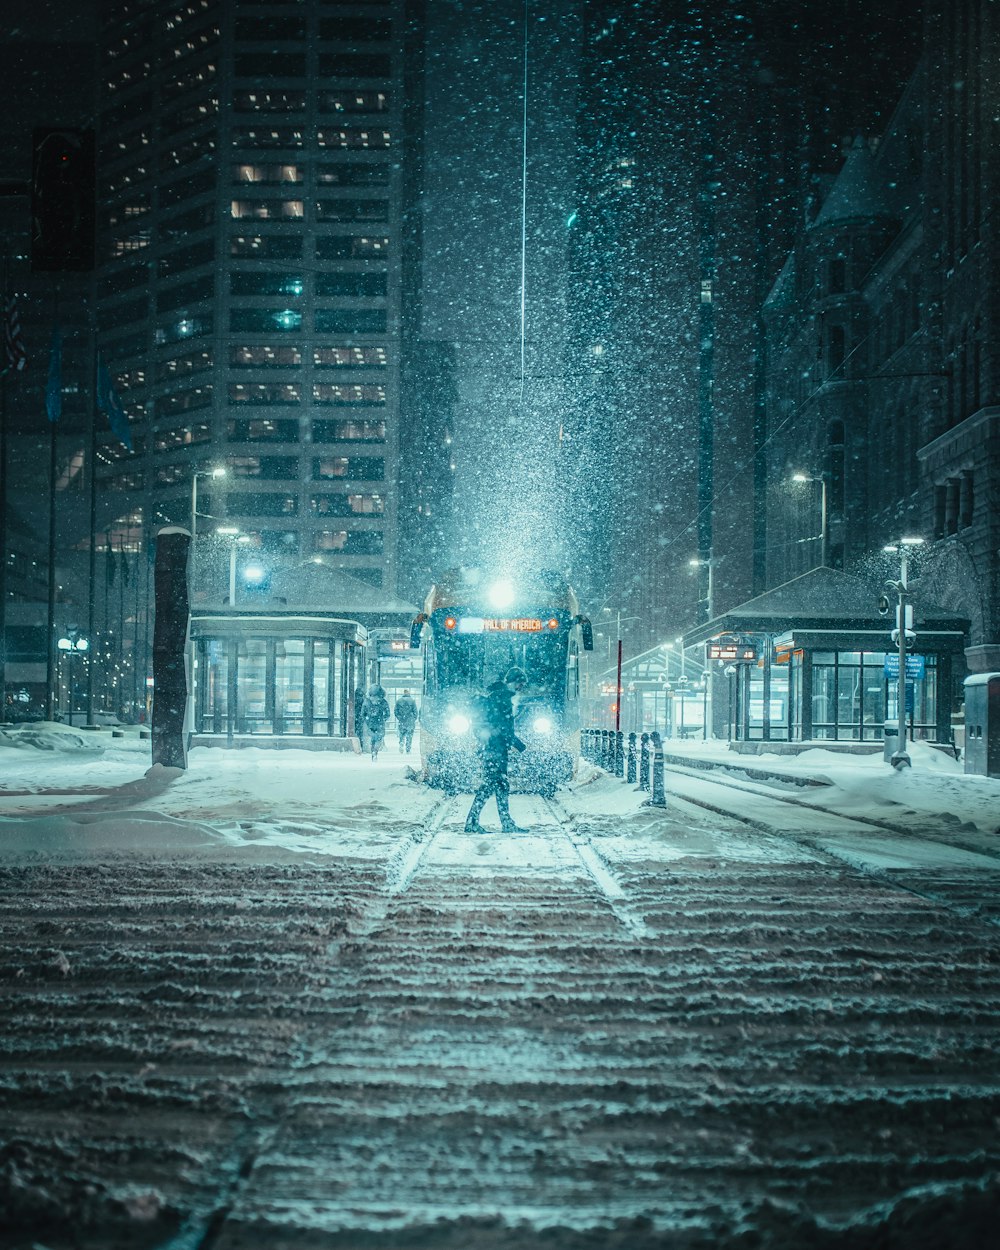 Persona parada en la carretera cubierta de nieve durante la noche de invierno